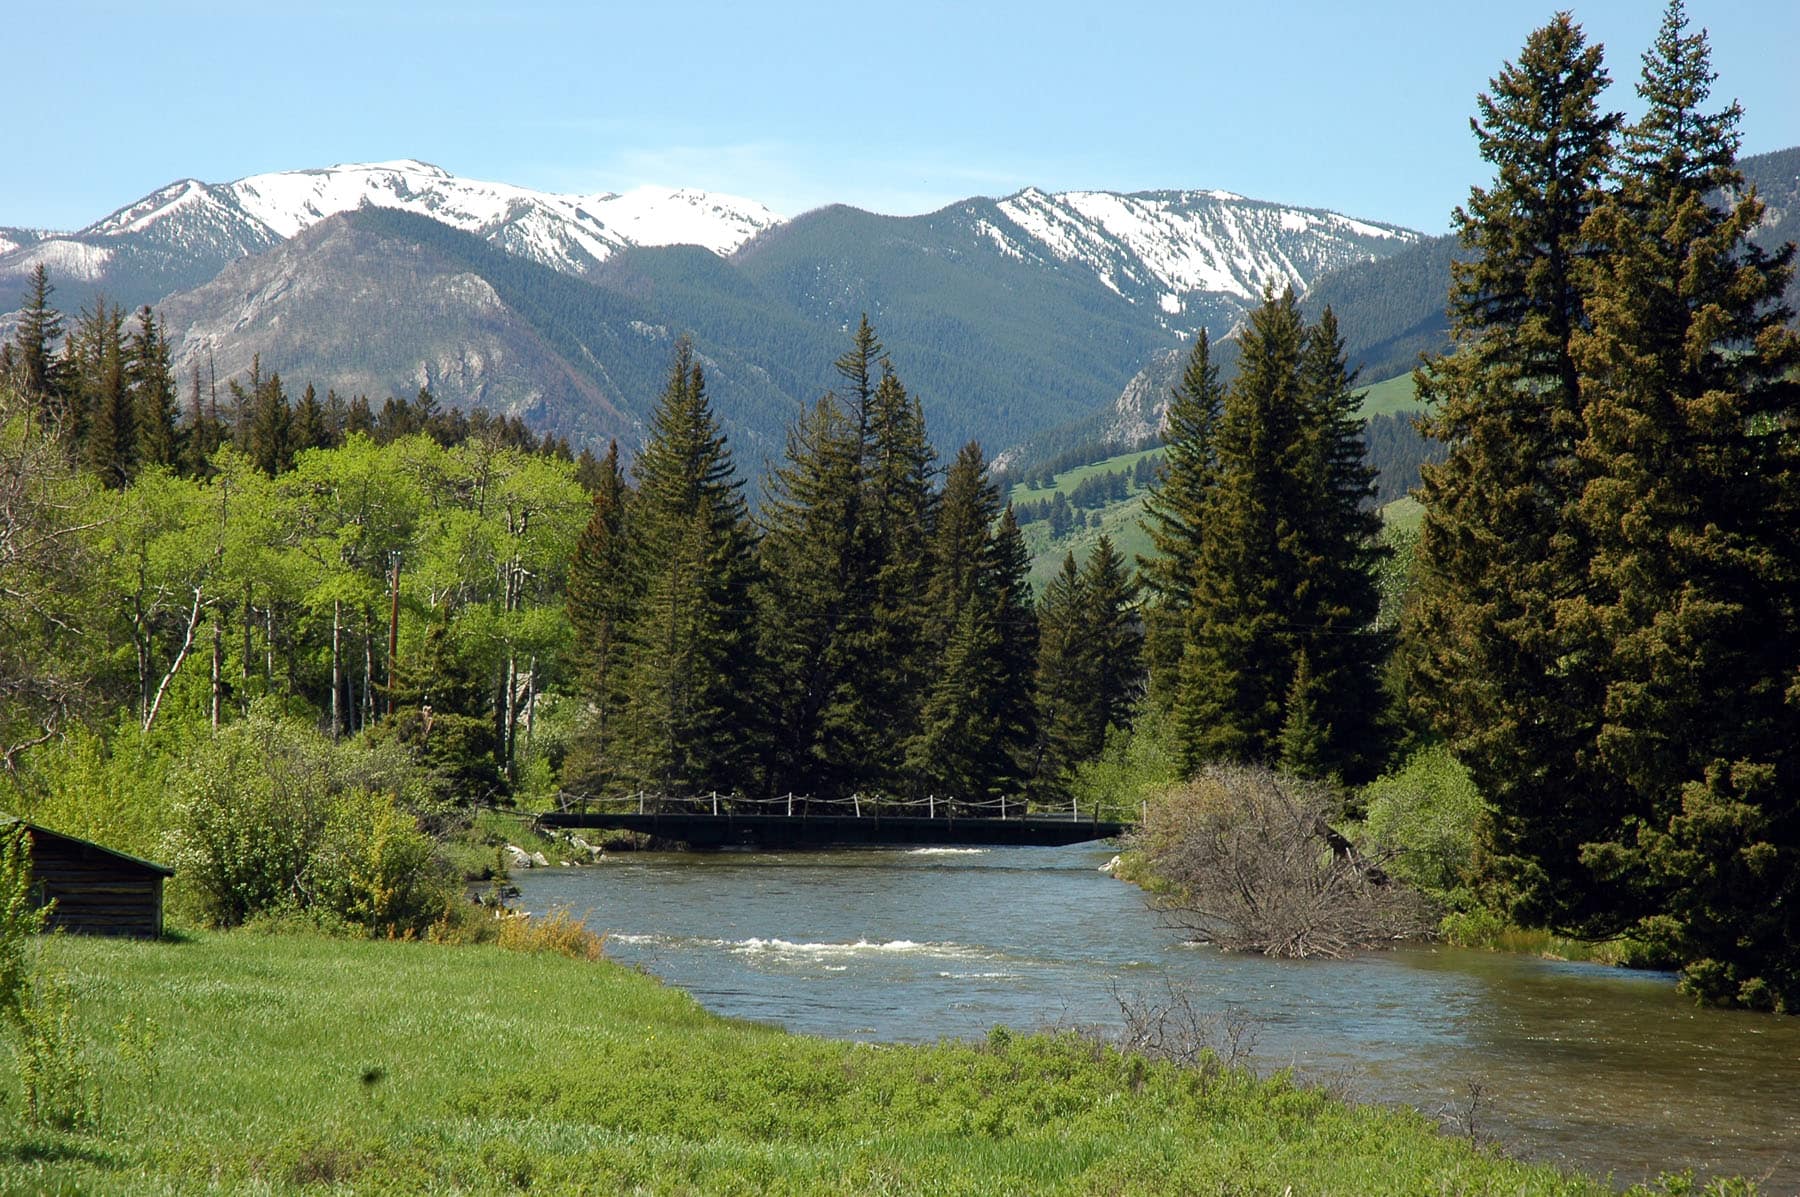 West Boulder Reserve Property For Sale West Boulder Angling Retreat Montana